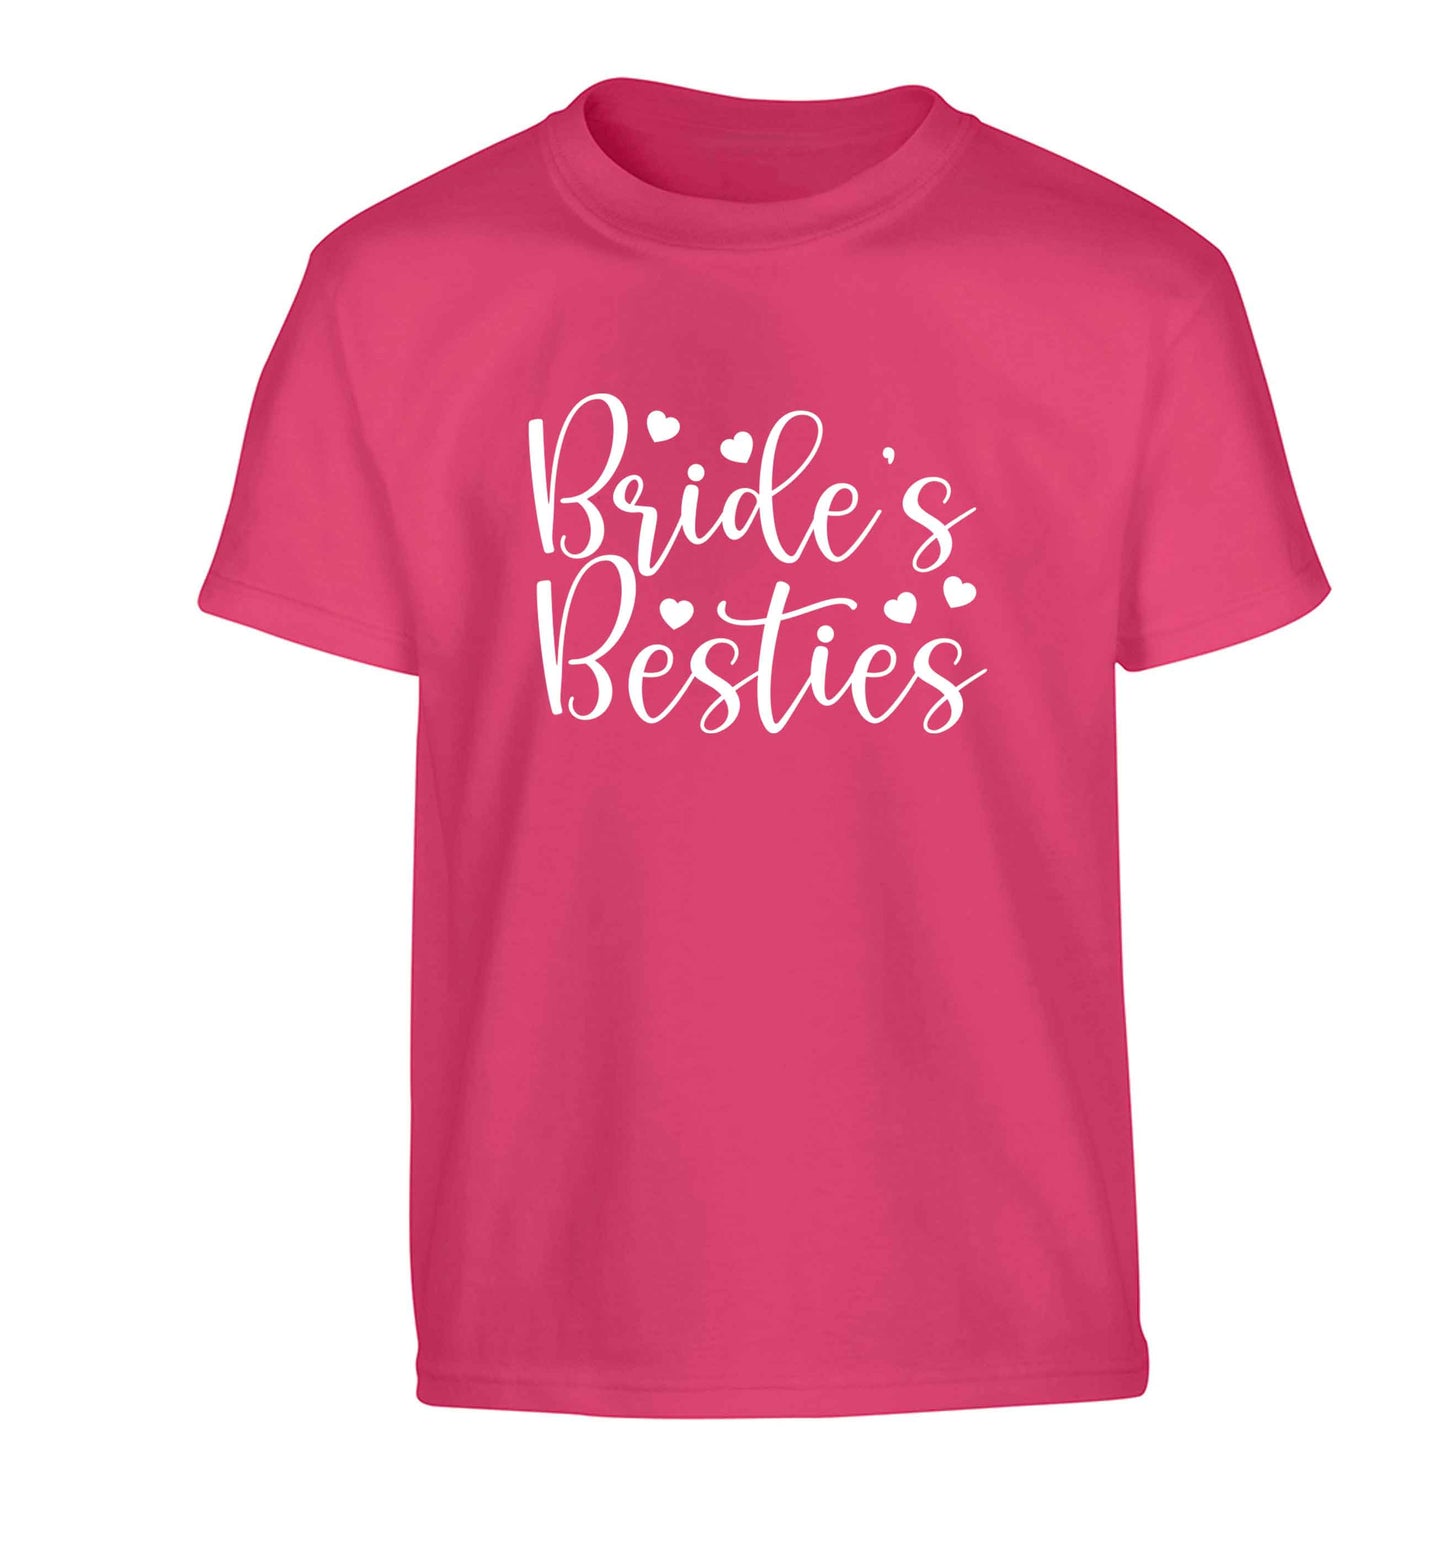 Brides besties Children's pink Tshirt 12-13 Years